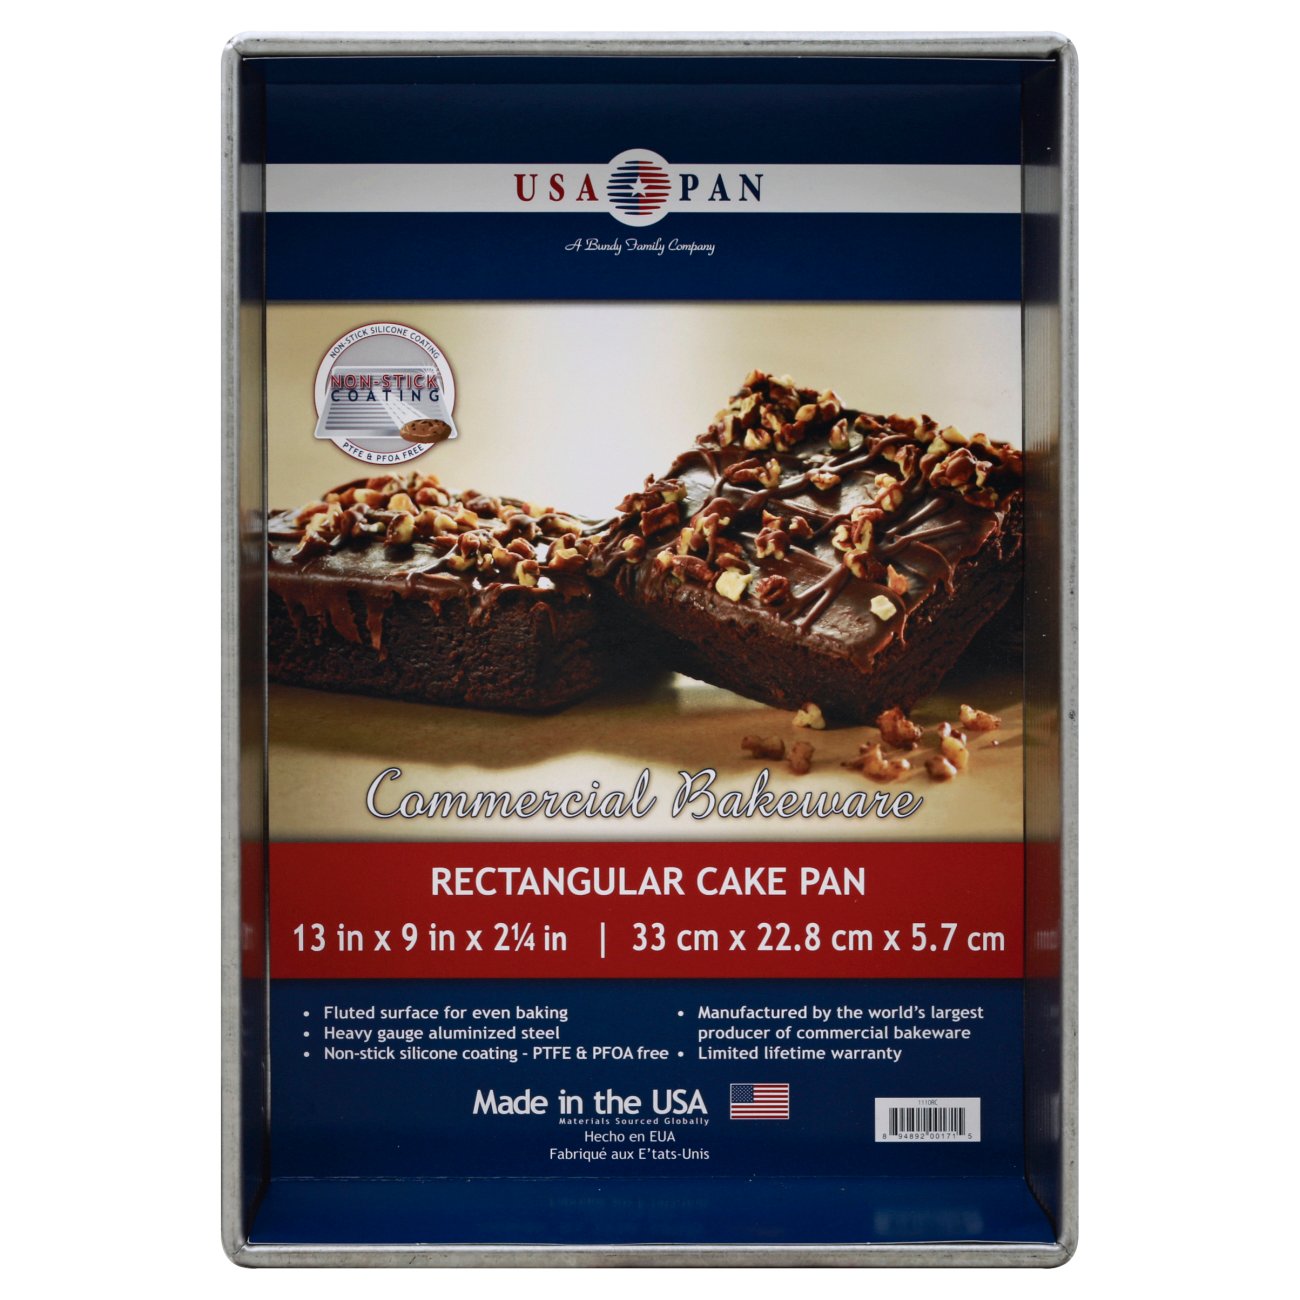 USA PAN Rectangular Cake Pan